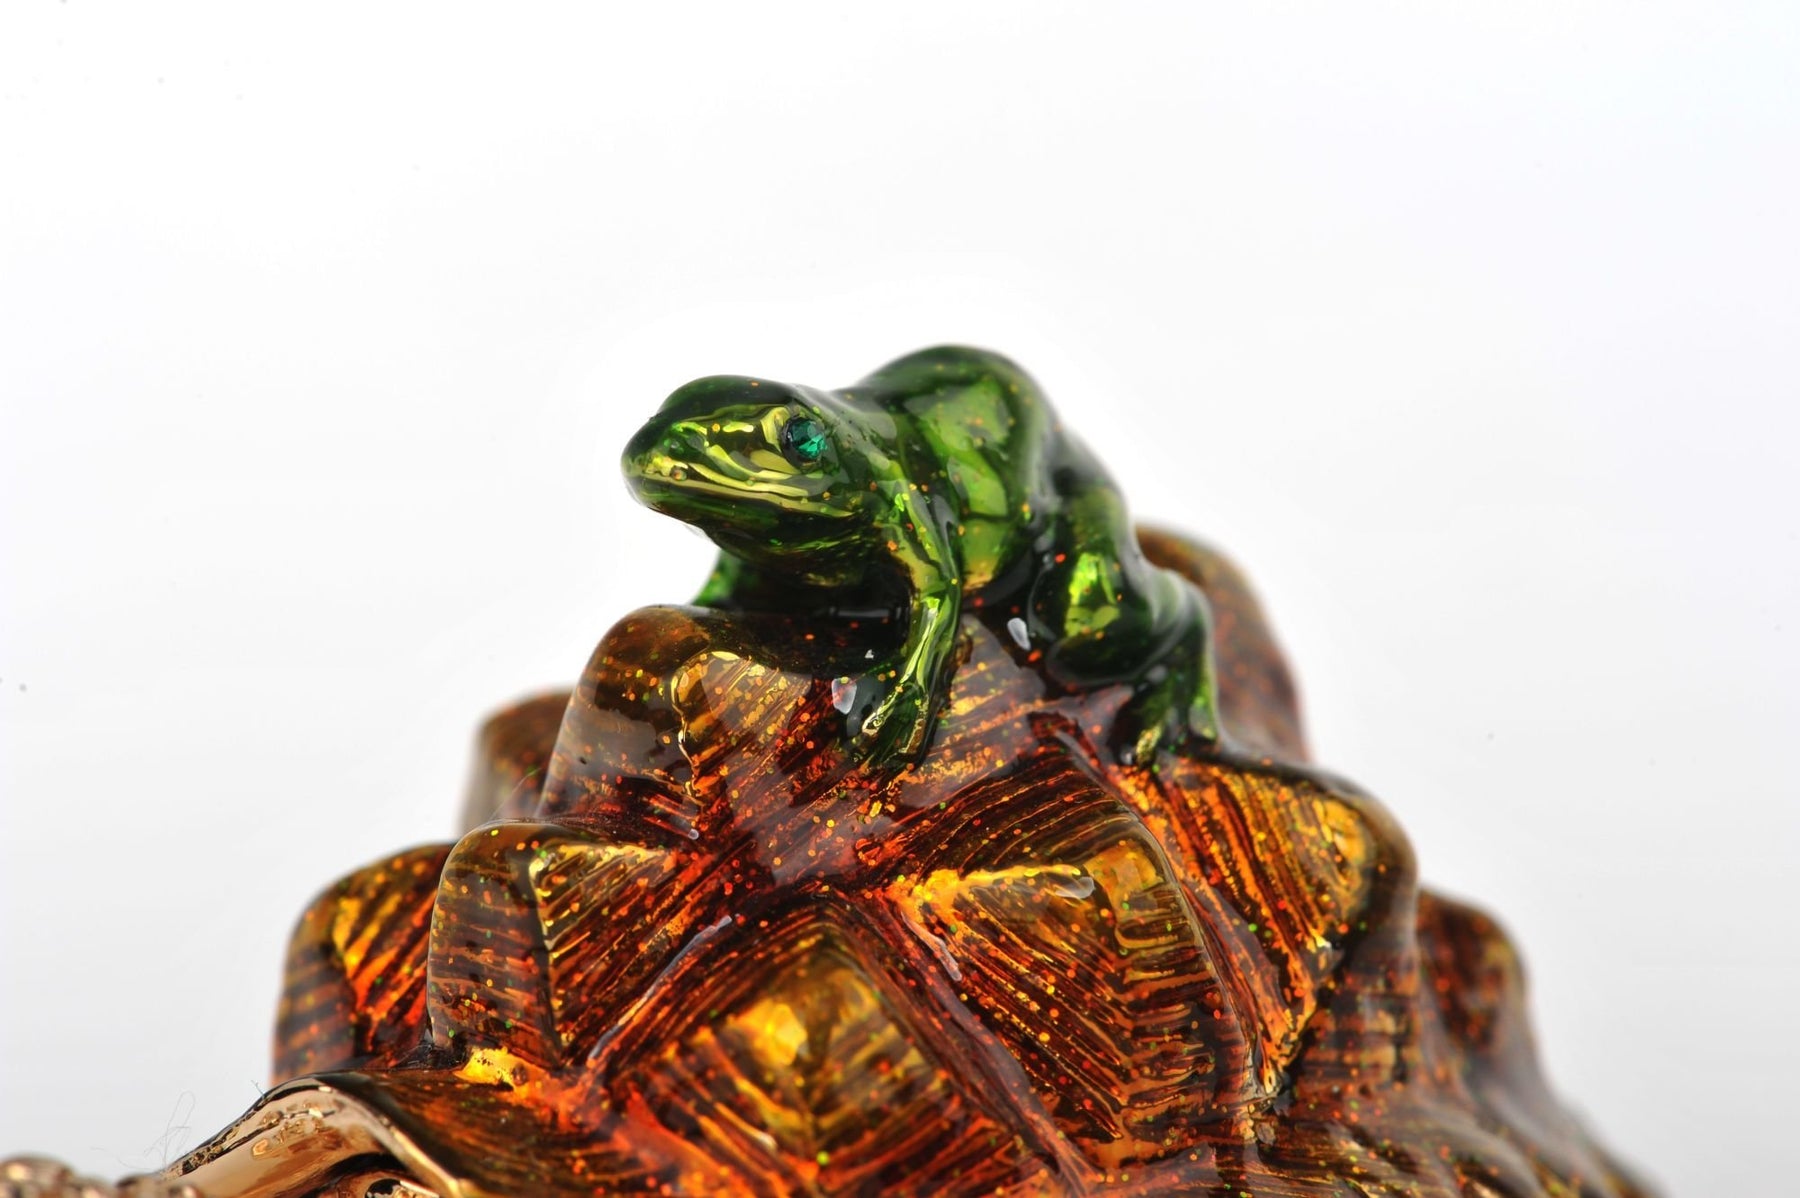 Keren Kopal Frog on a Turtle  52.50